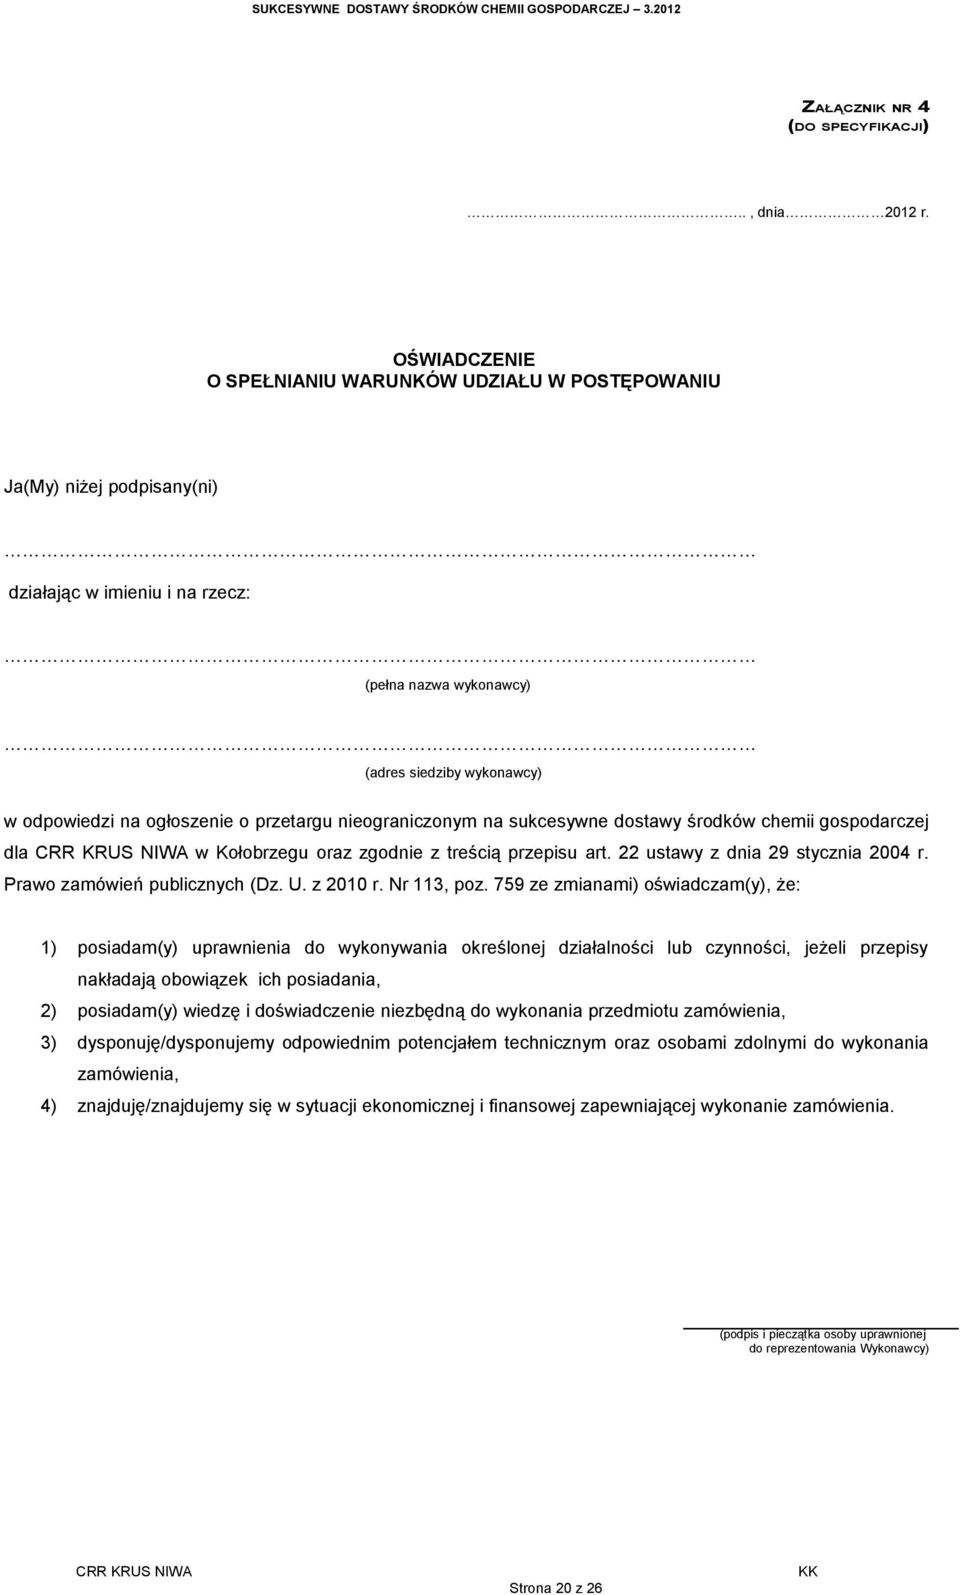 przetargu nieograniczonym na sukcesywne dostawy środków chemii gospodarczej dla w Kołobrzegu oraz zgodnie z treścią przepisu art. 22 ustawy z dnia 29 stycznia 2004 r. Prawo zamówień publicznych (Dz.